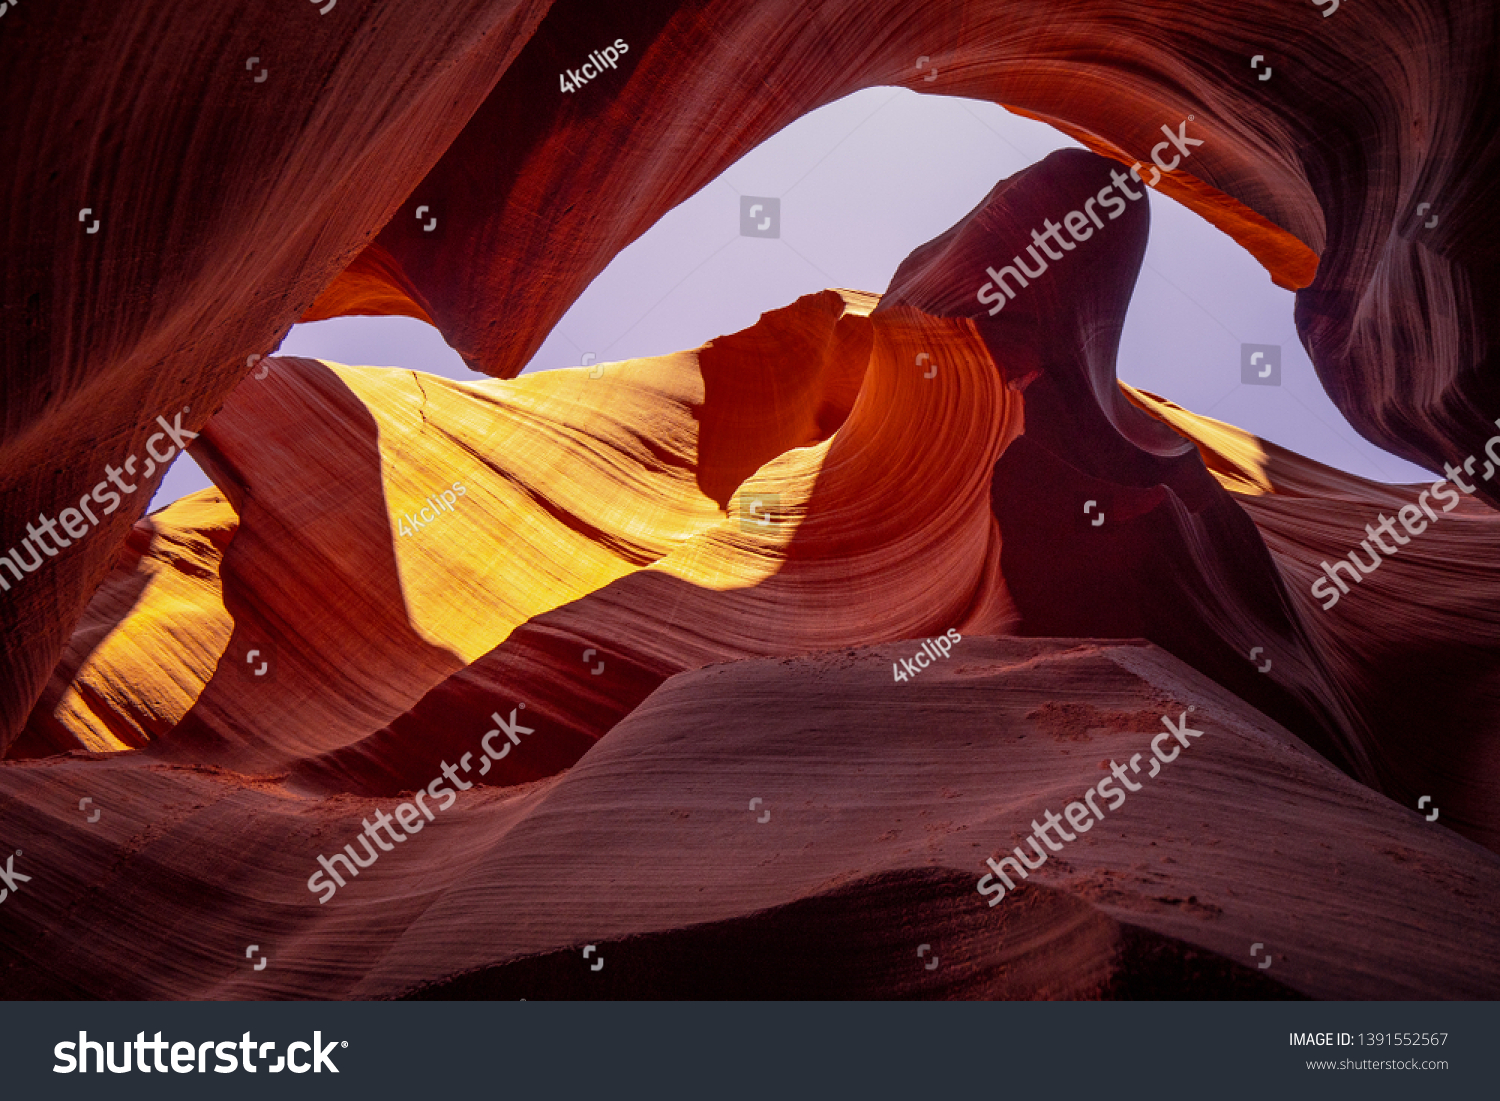 World famous Antelope Canyon - amazing scenery - travel photography #1391552567